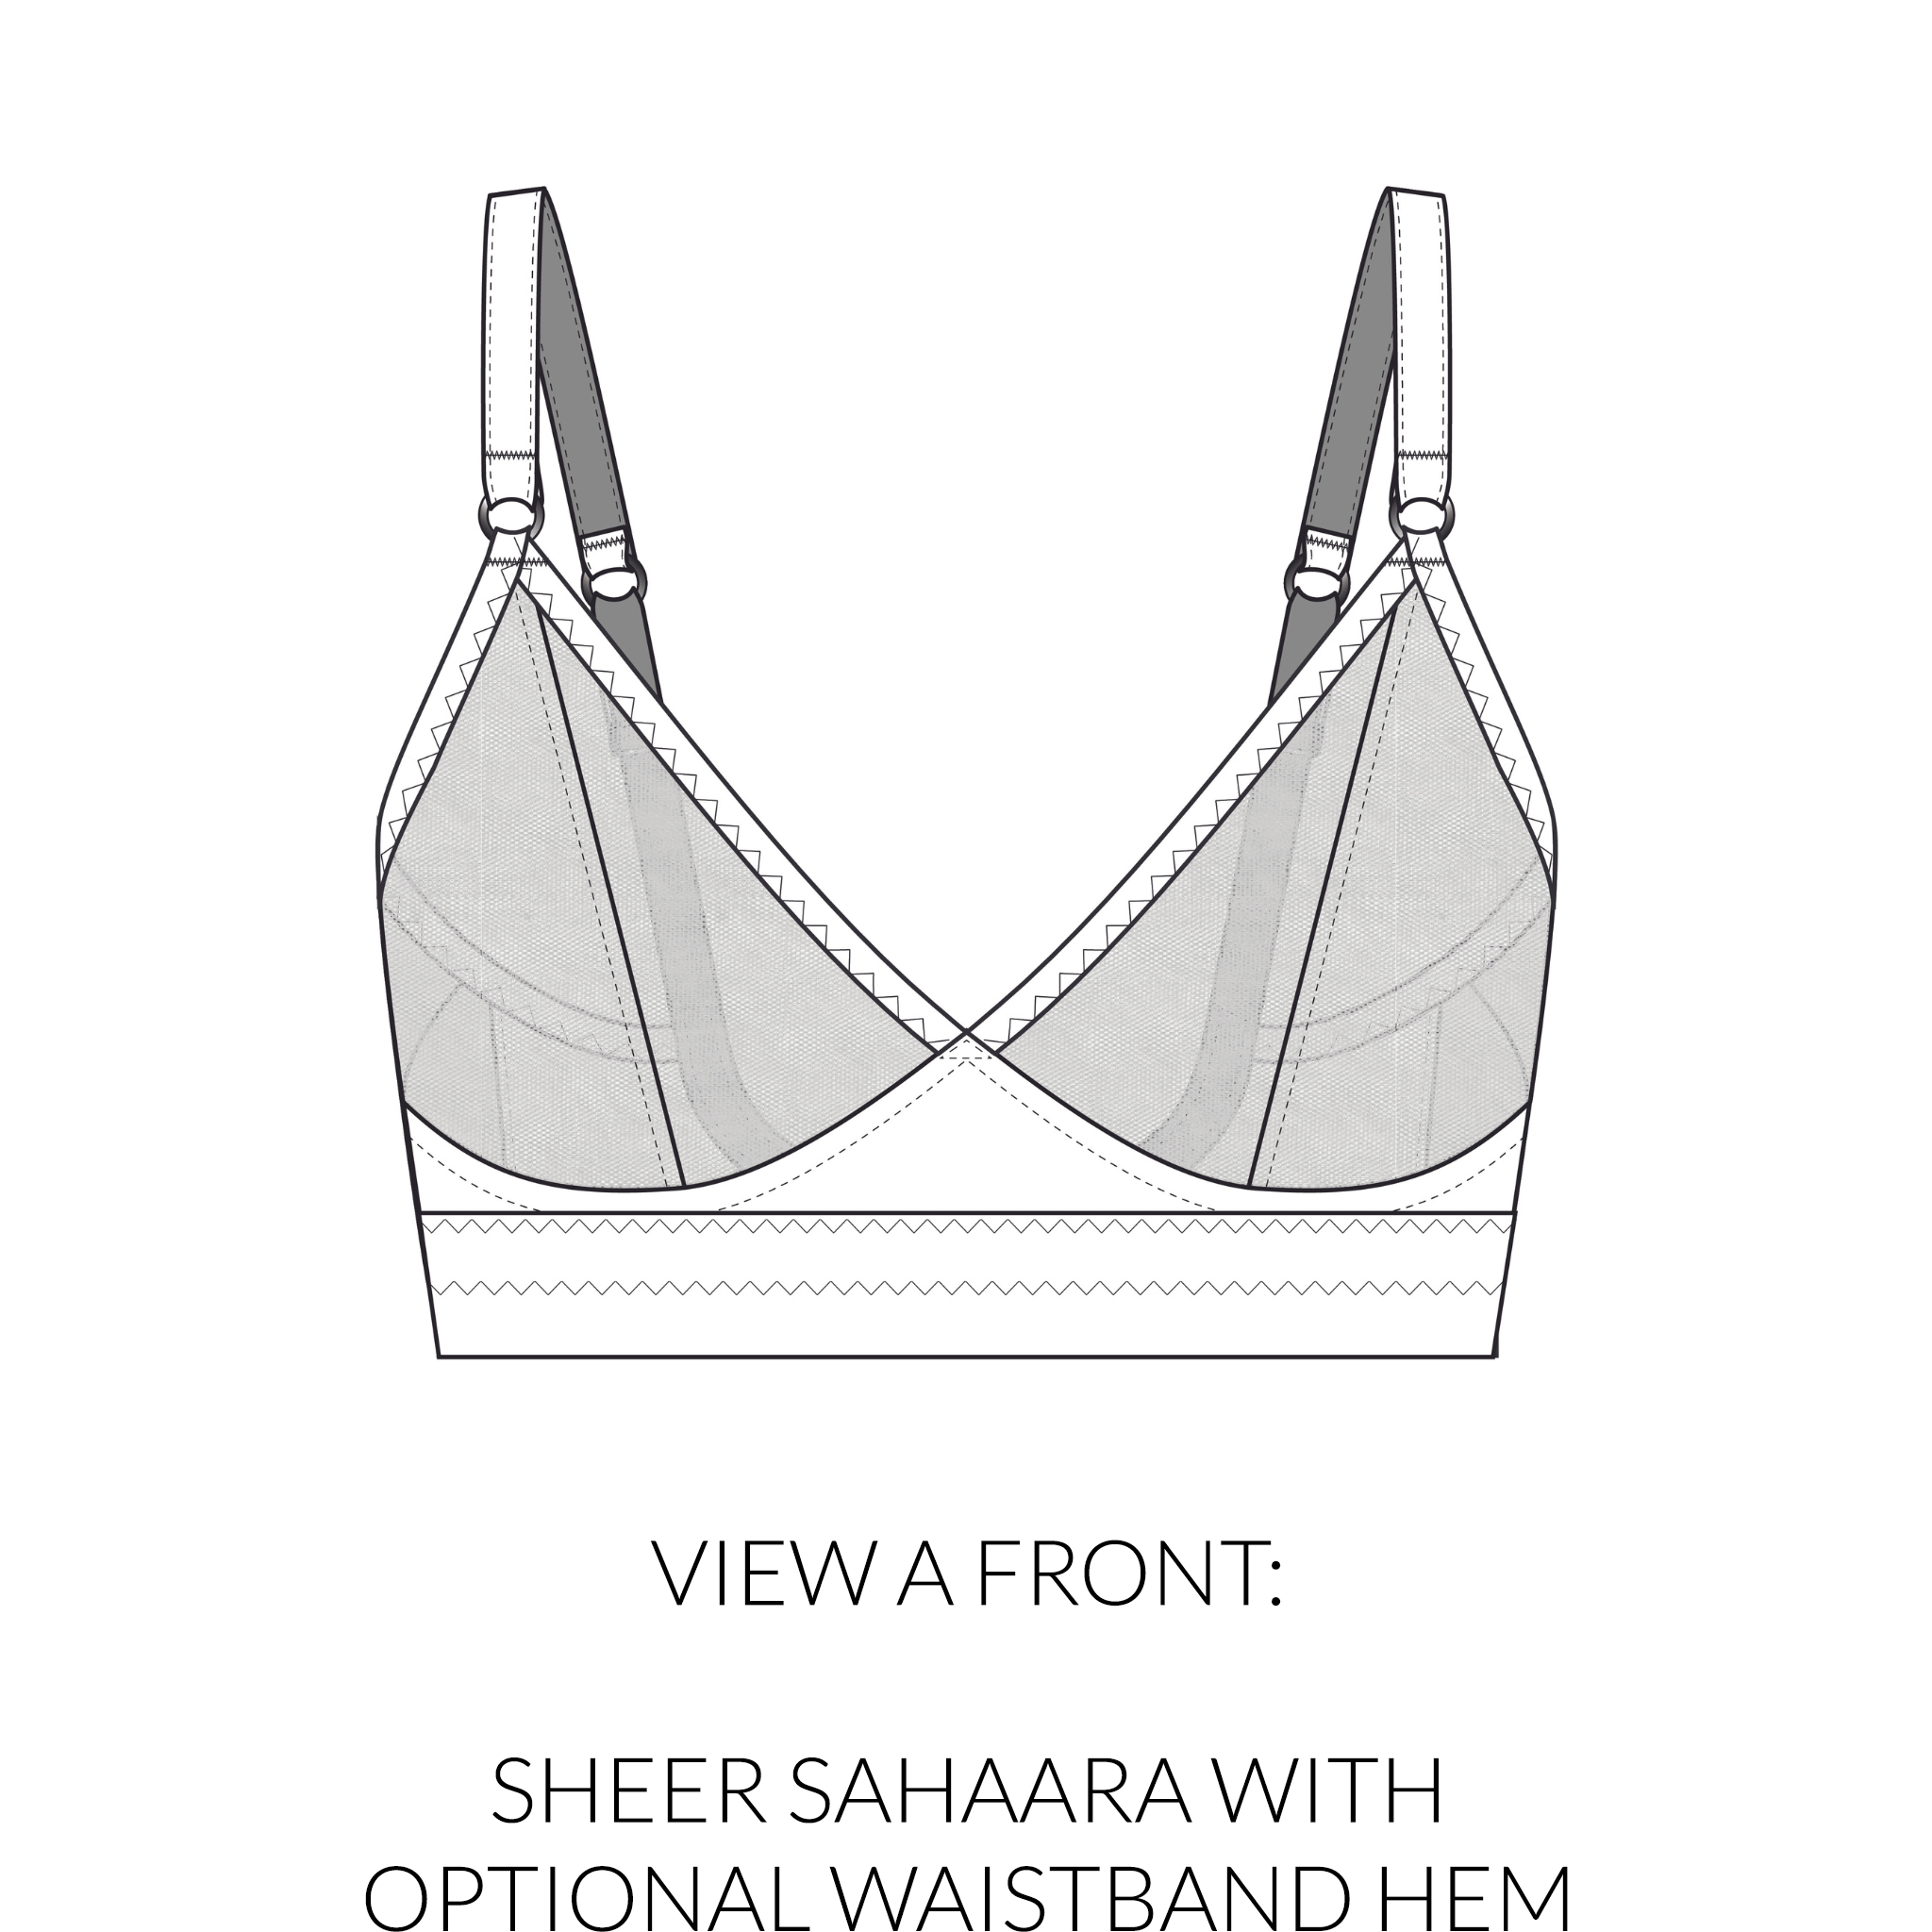 Bra Builders - Introducing Sahaara Kits! The Sahaara